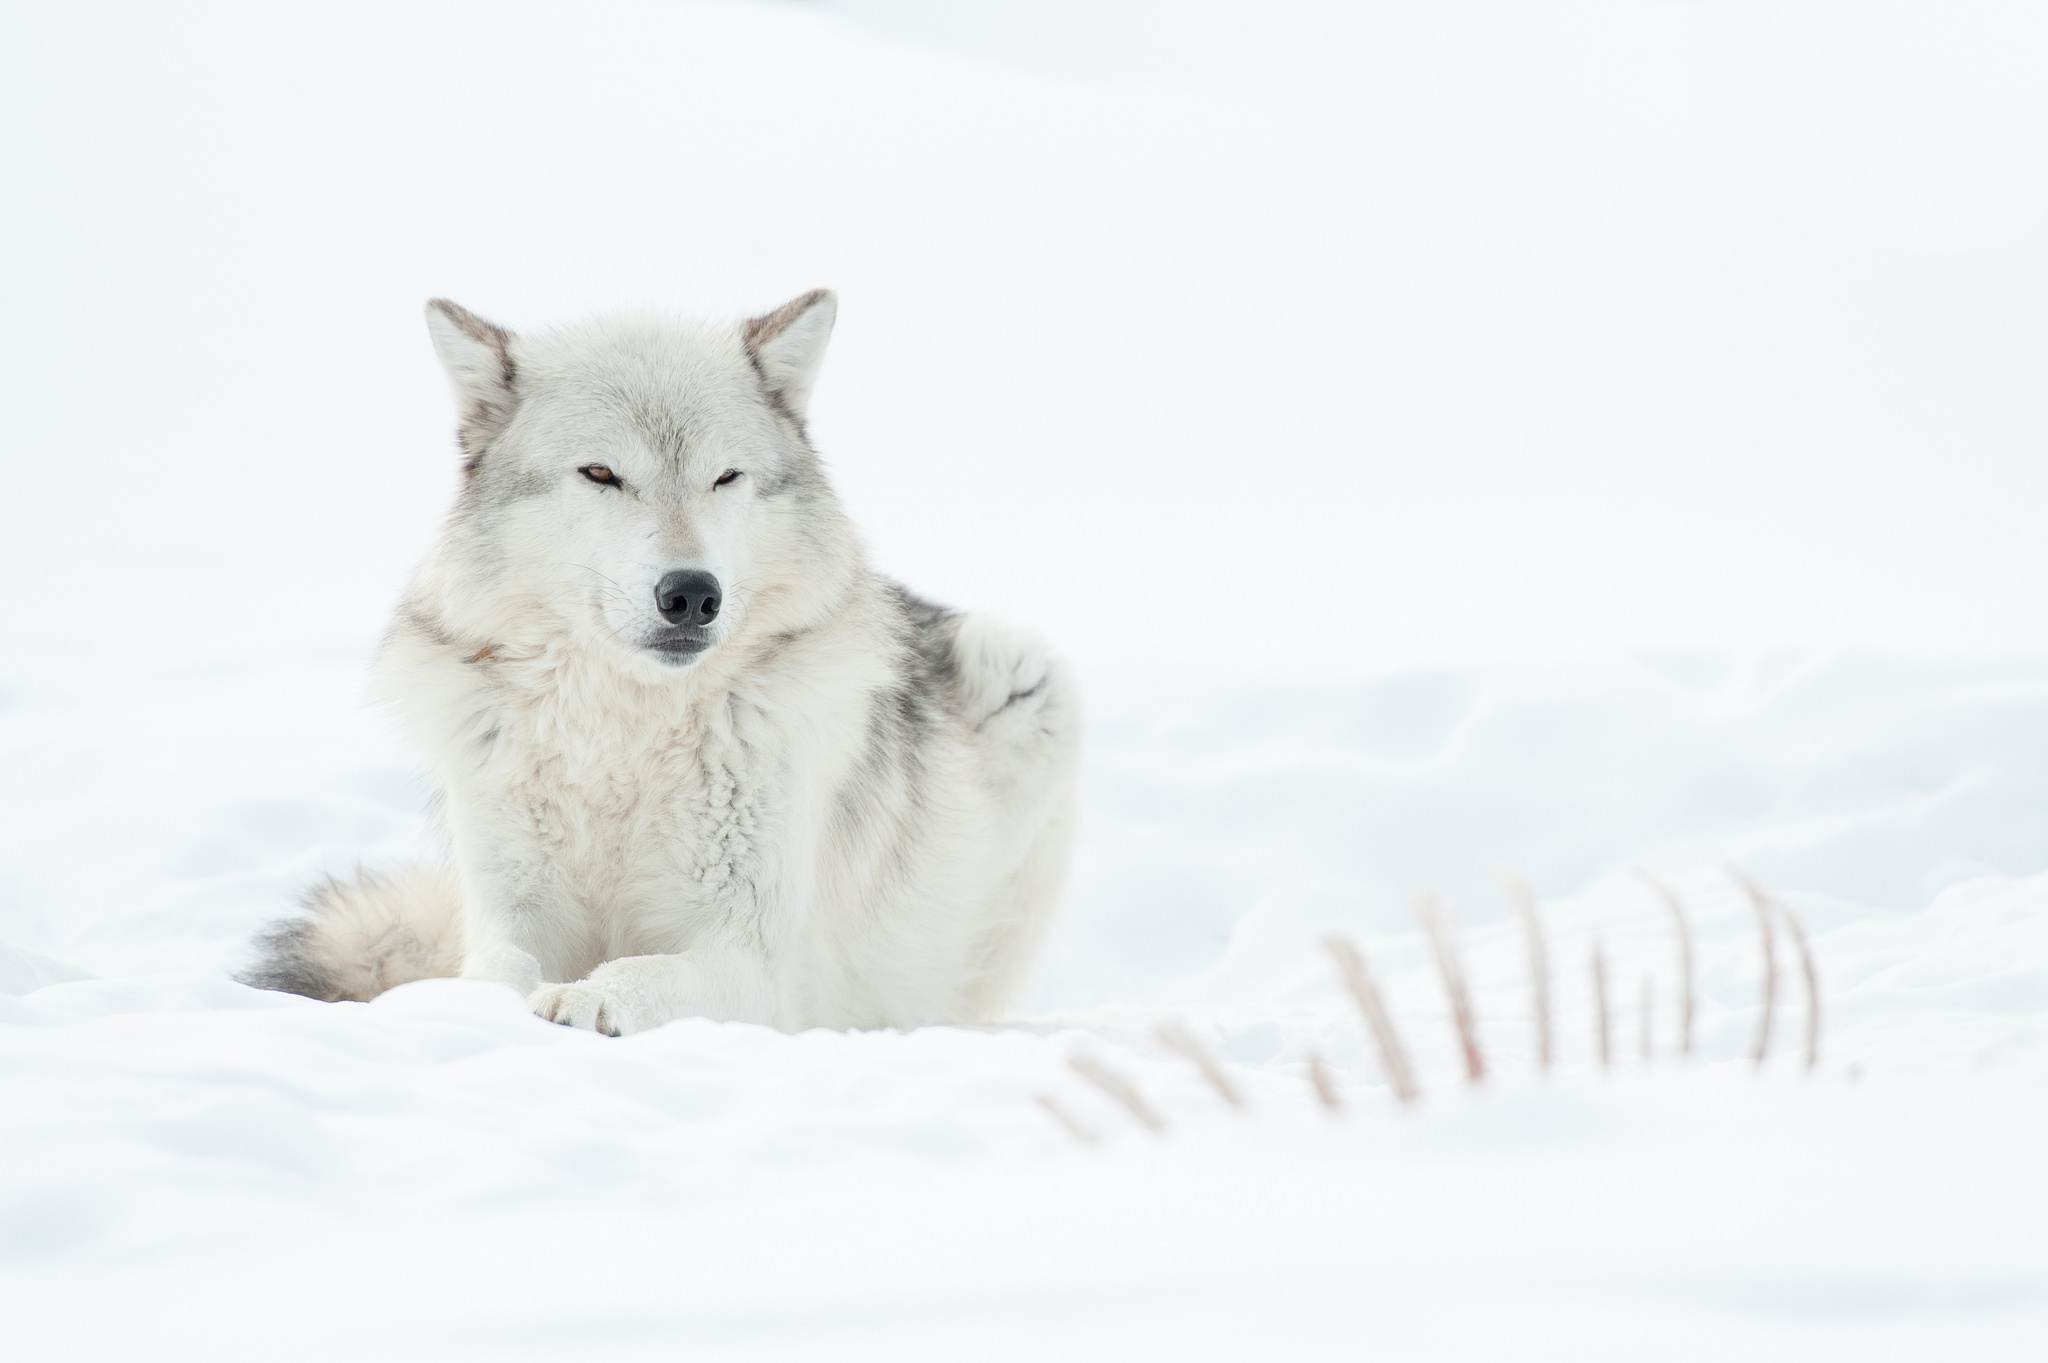 Снежный волк